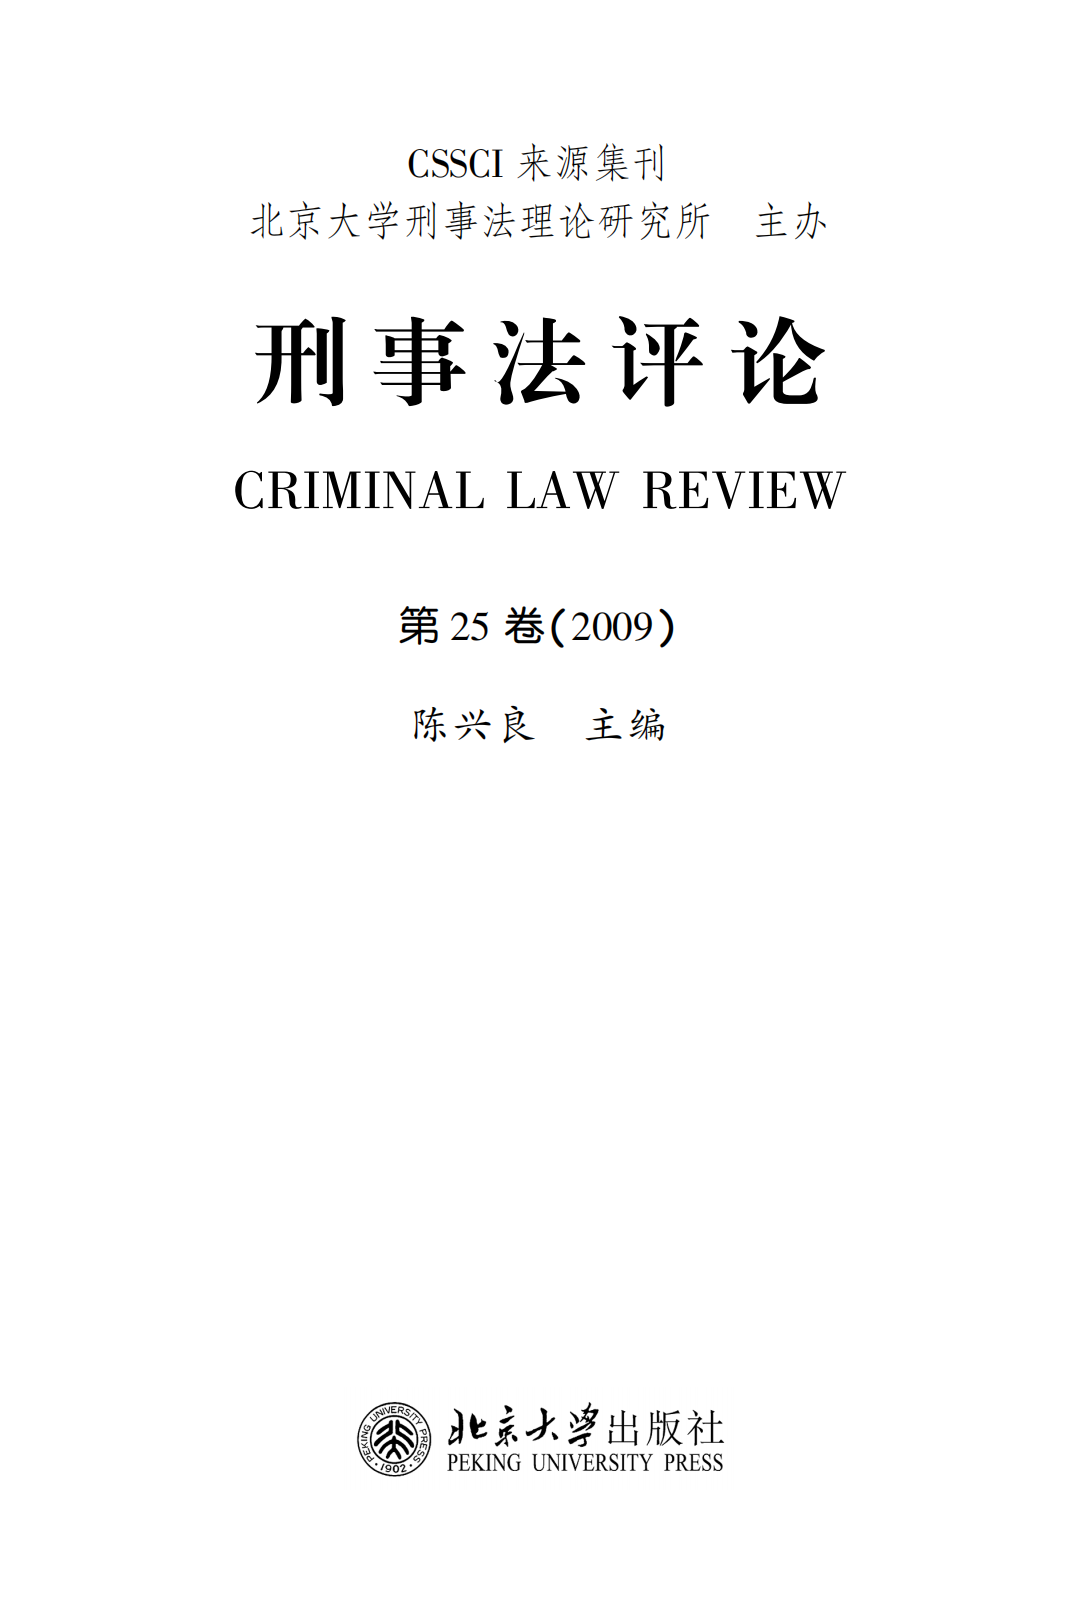 提取自刑事法评论（第25卷）_00.png